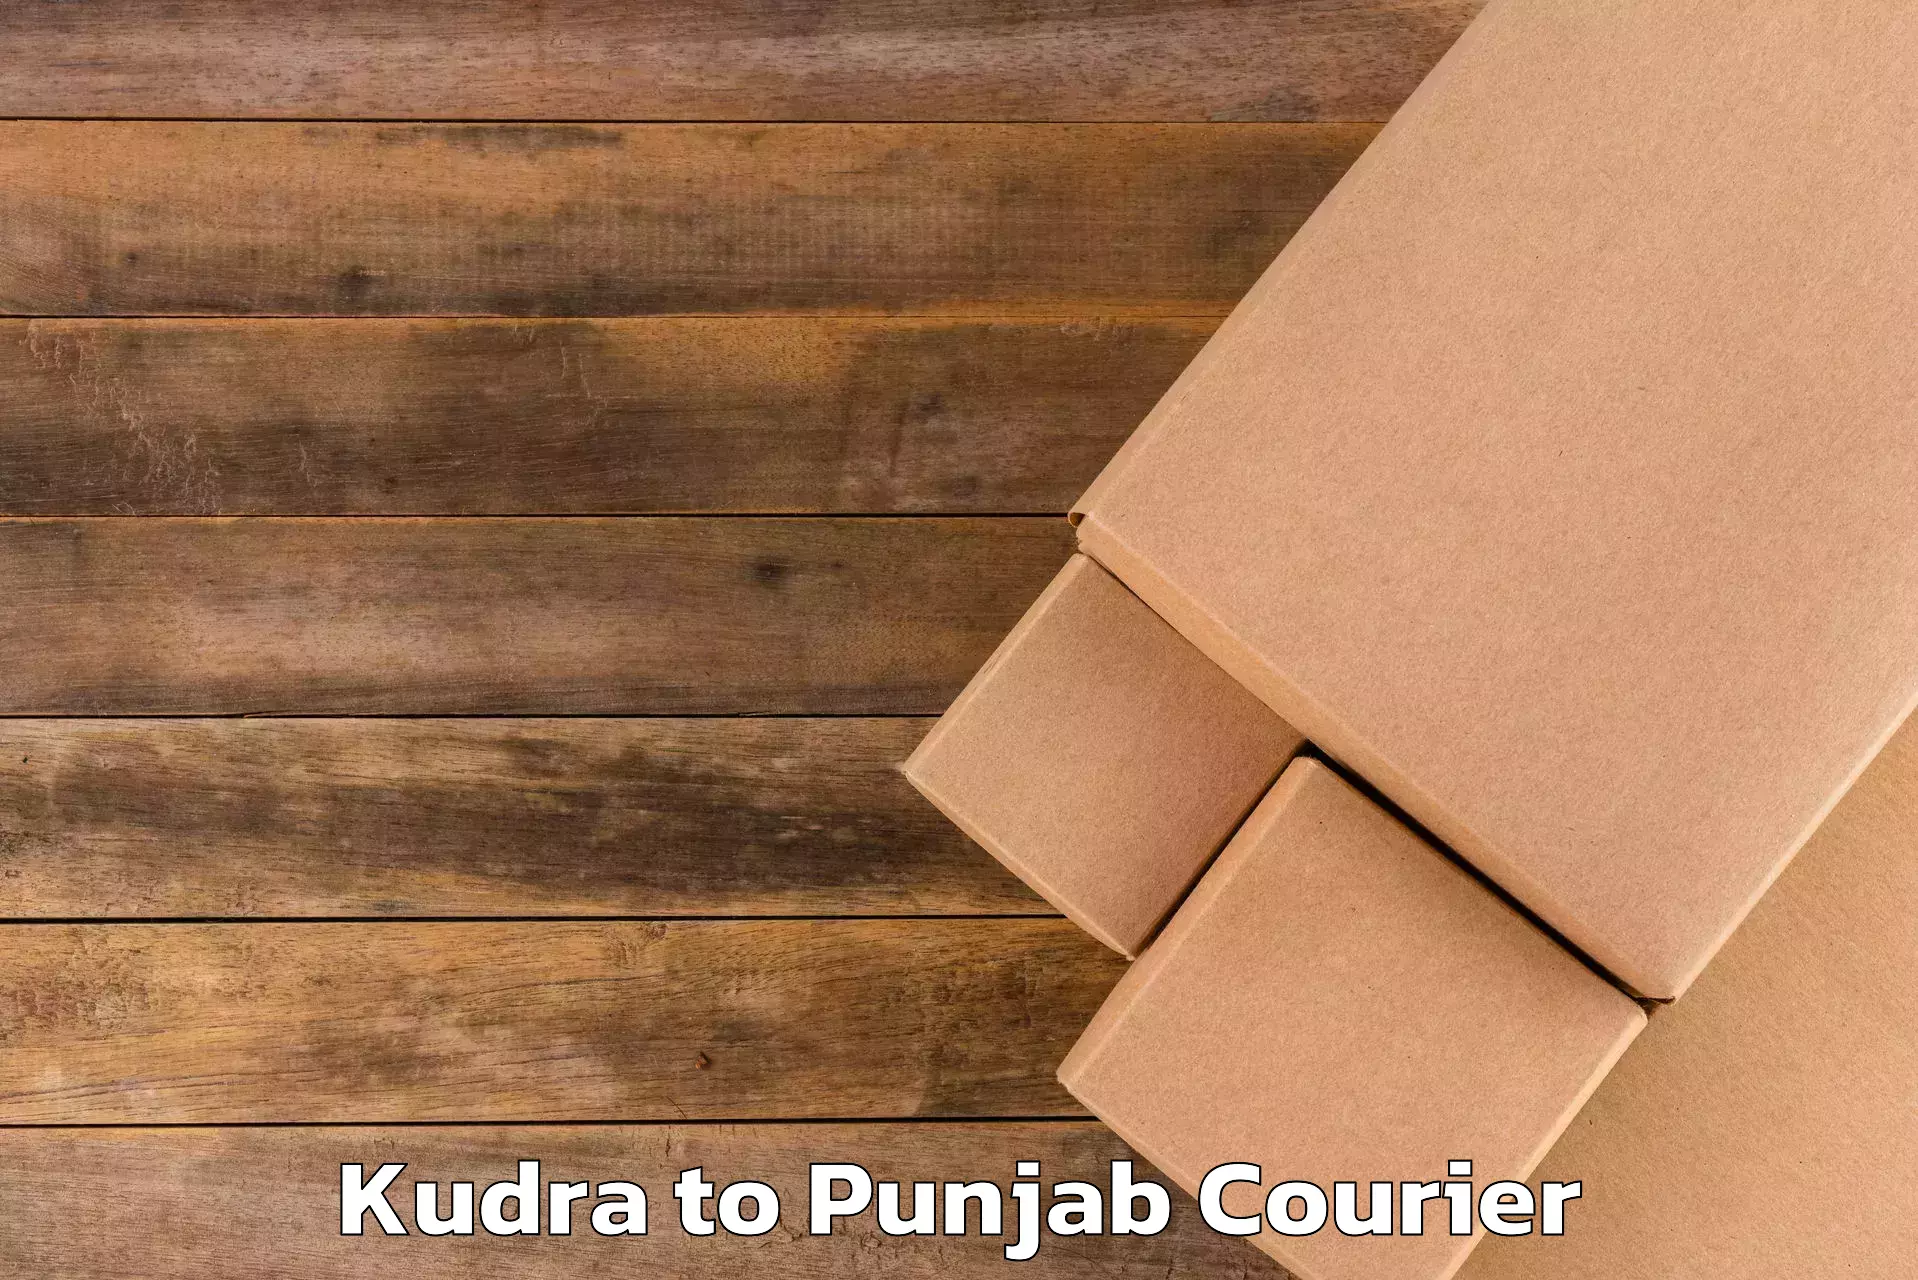 Luggage transport service Kudra to Punjab